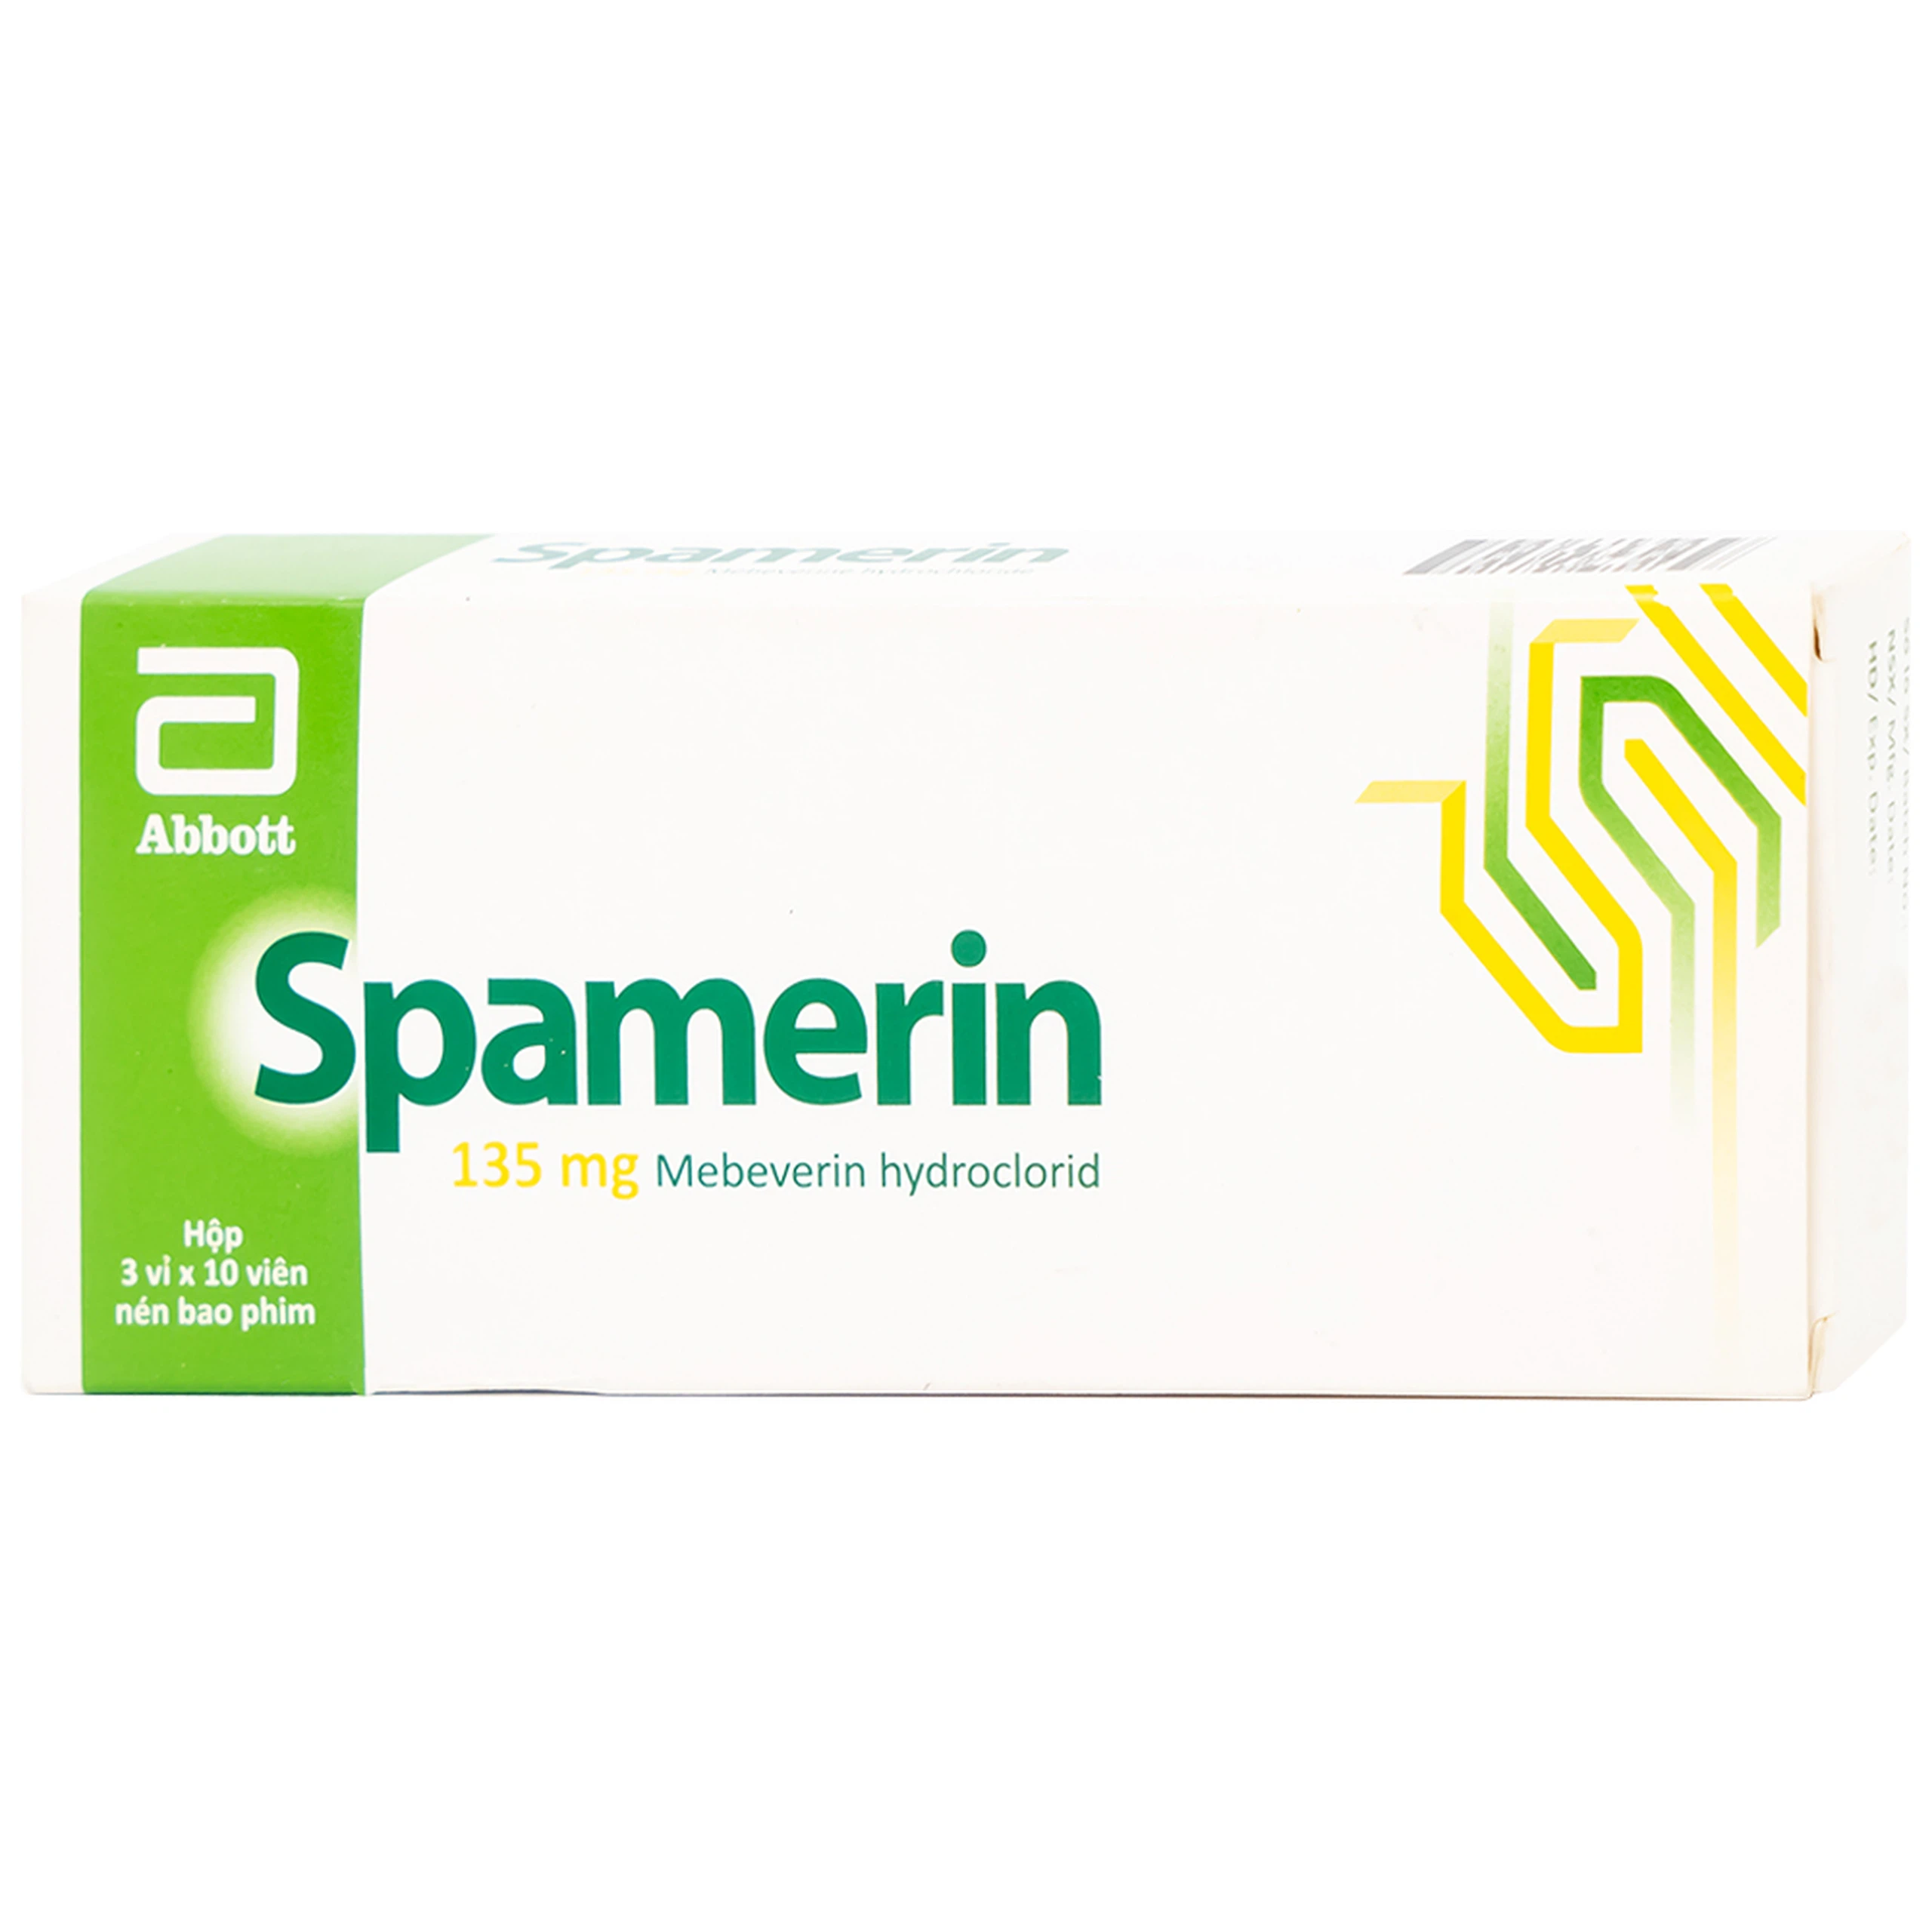 Thuốc Spamerin 135mg Abbott điều trị hội chứng ruột kích thích, đau bụng và đau quặn bụng, tiêu chảy (30 viên)